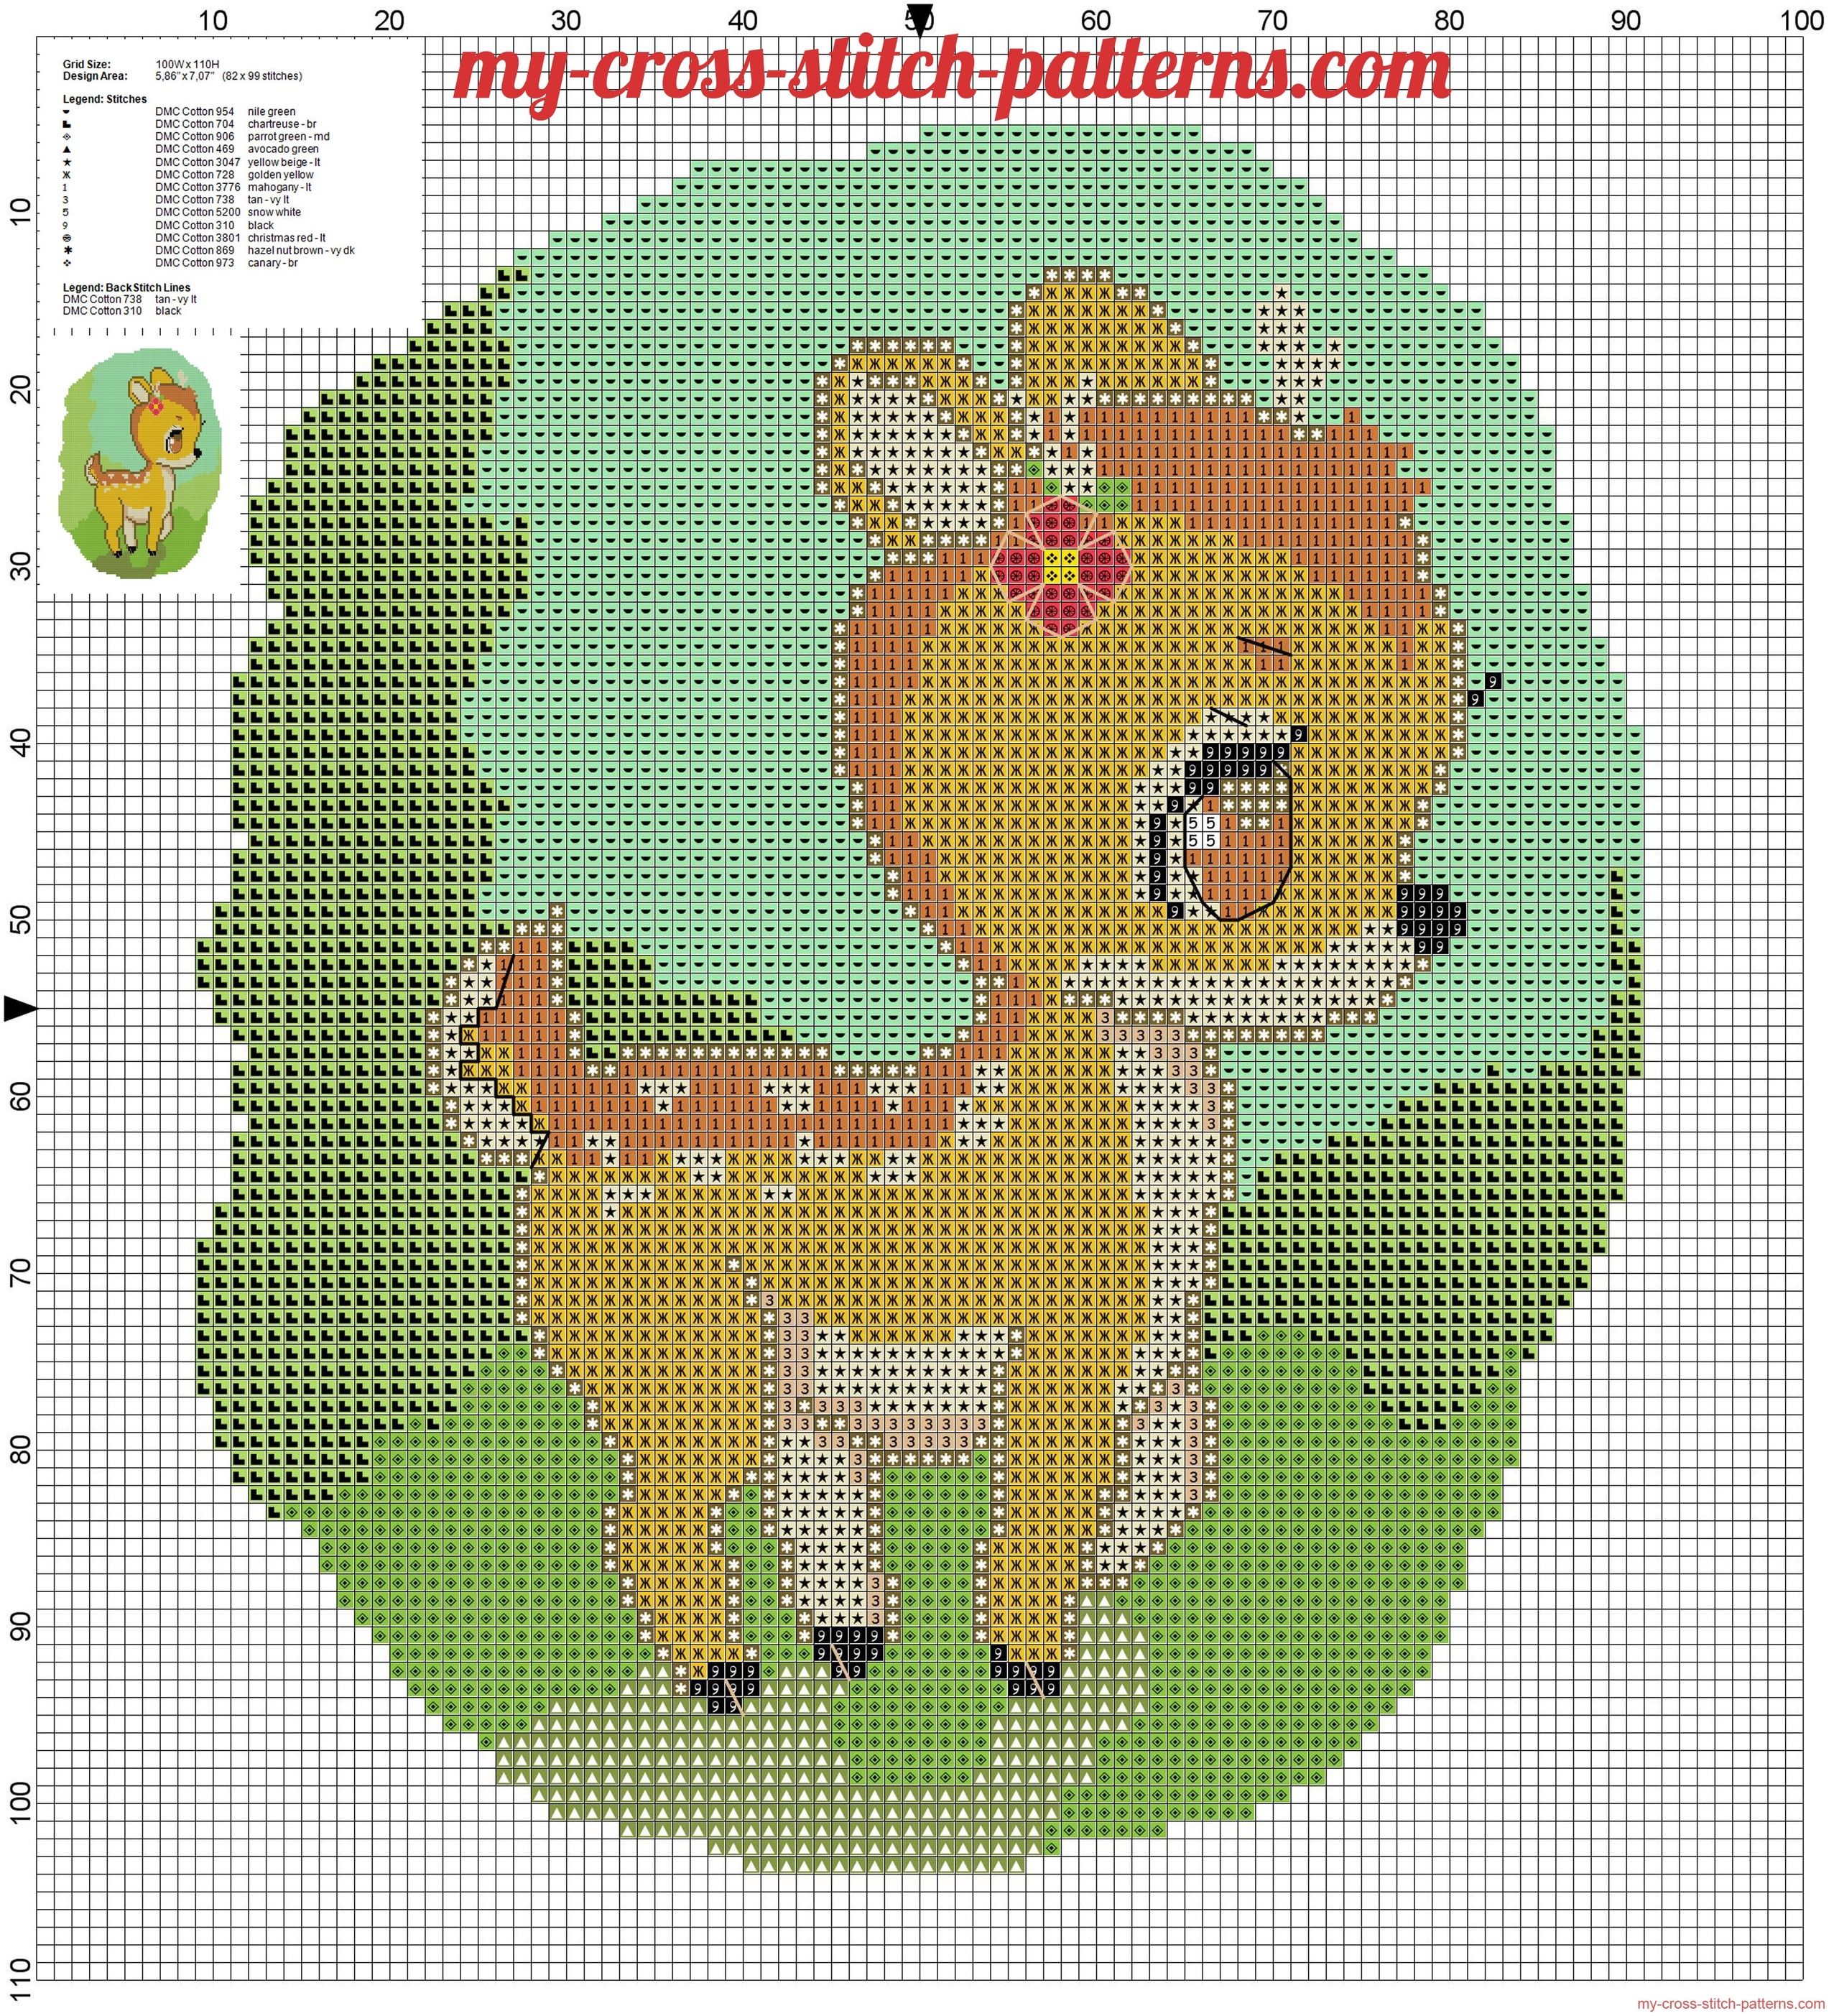 sweet_cross_stitch_pattern_of_bambi_